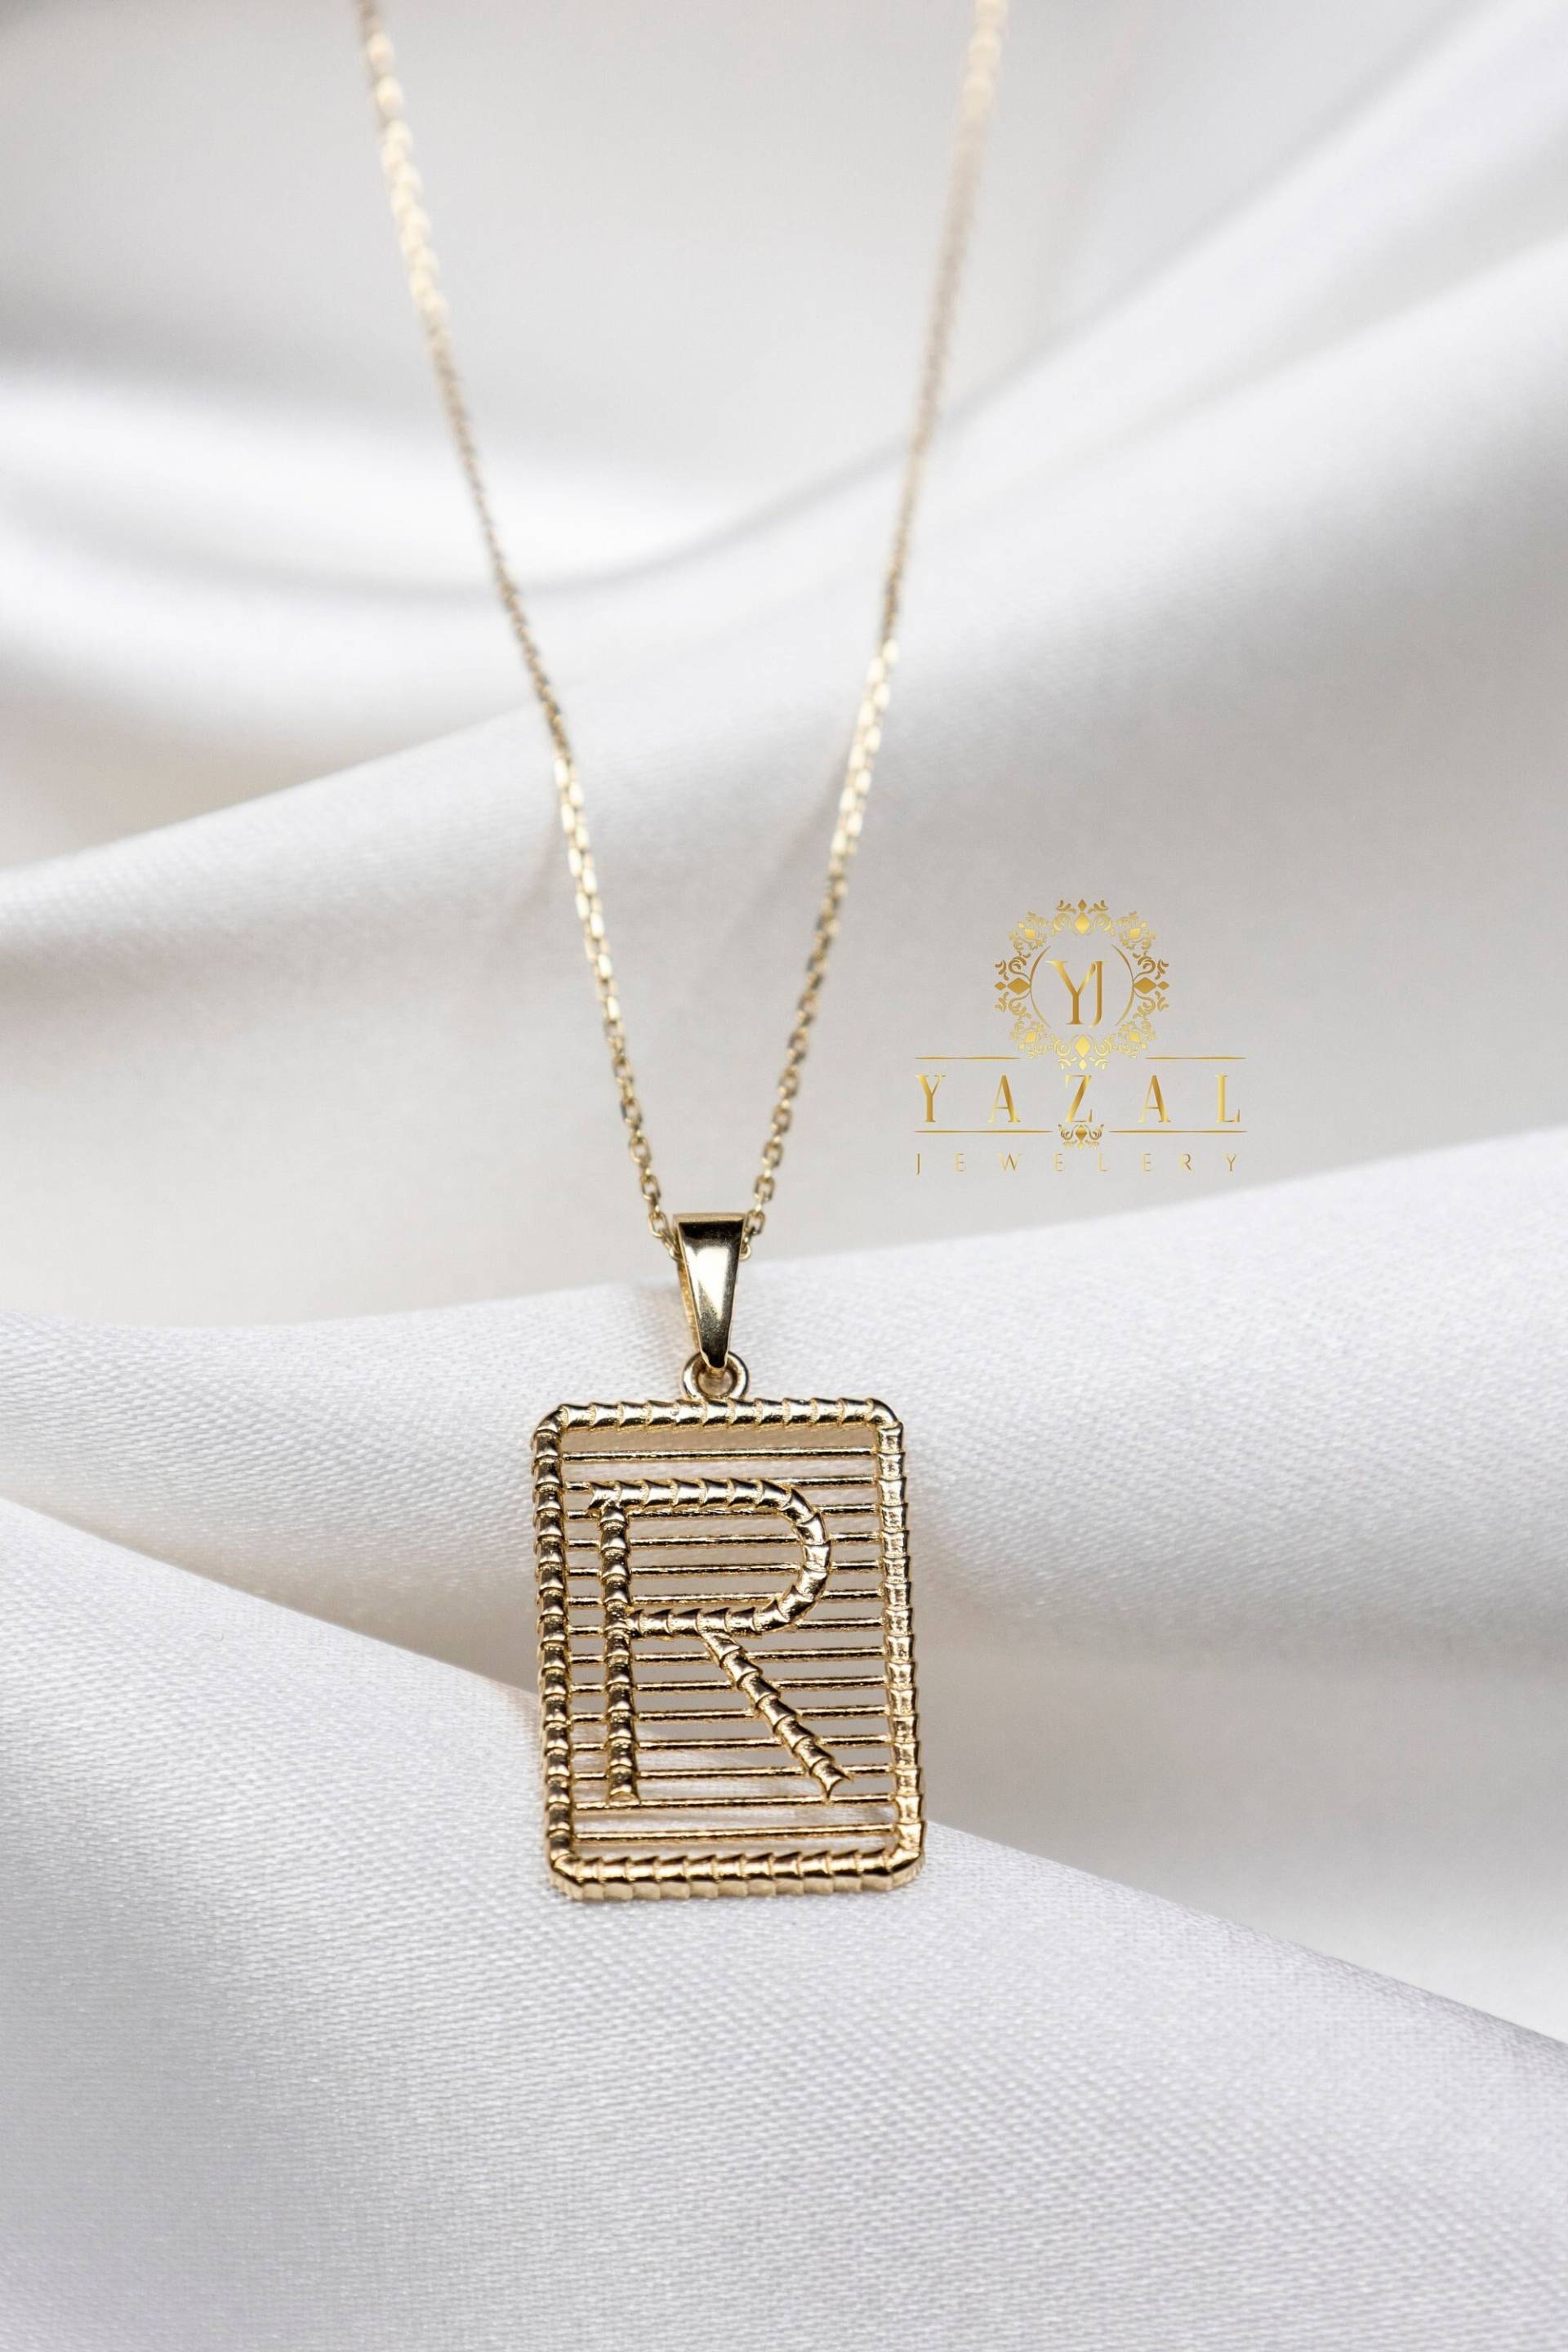 14K Solid Gold Initial Halskette, Buchstabe Block, Block Charm, Benutzerdefinierte Minimalistisch, Handgemacht, Geschenk Für Sie von YazalJewelery